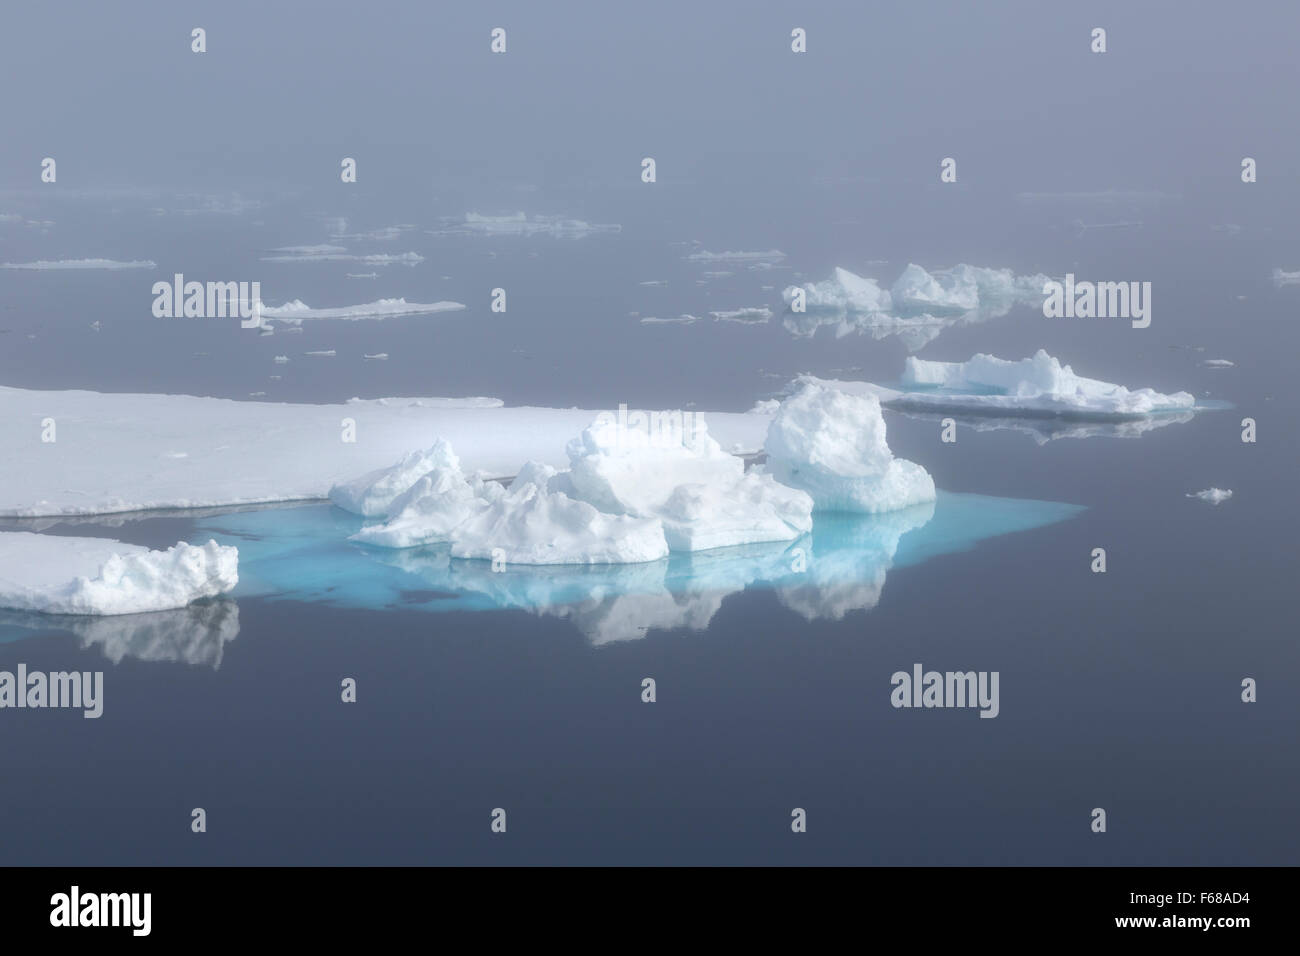 Des blocs de glace, la bordure de la banquise, l'océan Arctique, l'archipel du Svalbard, l'île de Spitsbergen, Svalbard et Jan Mayen, Norvège, Europe Banque D'Images